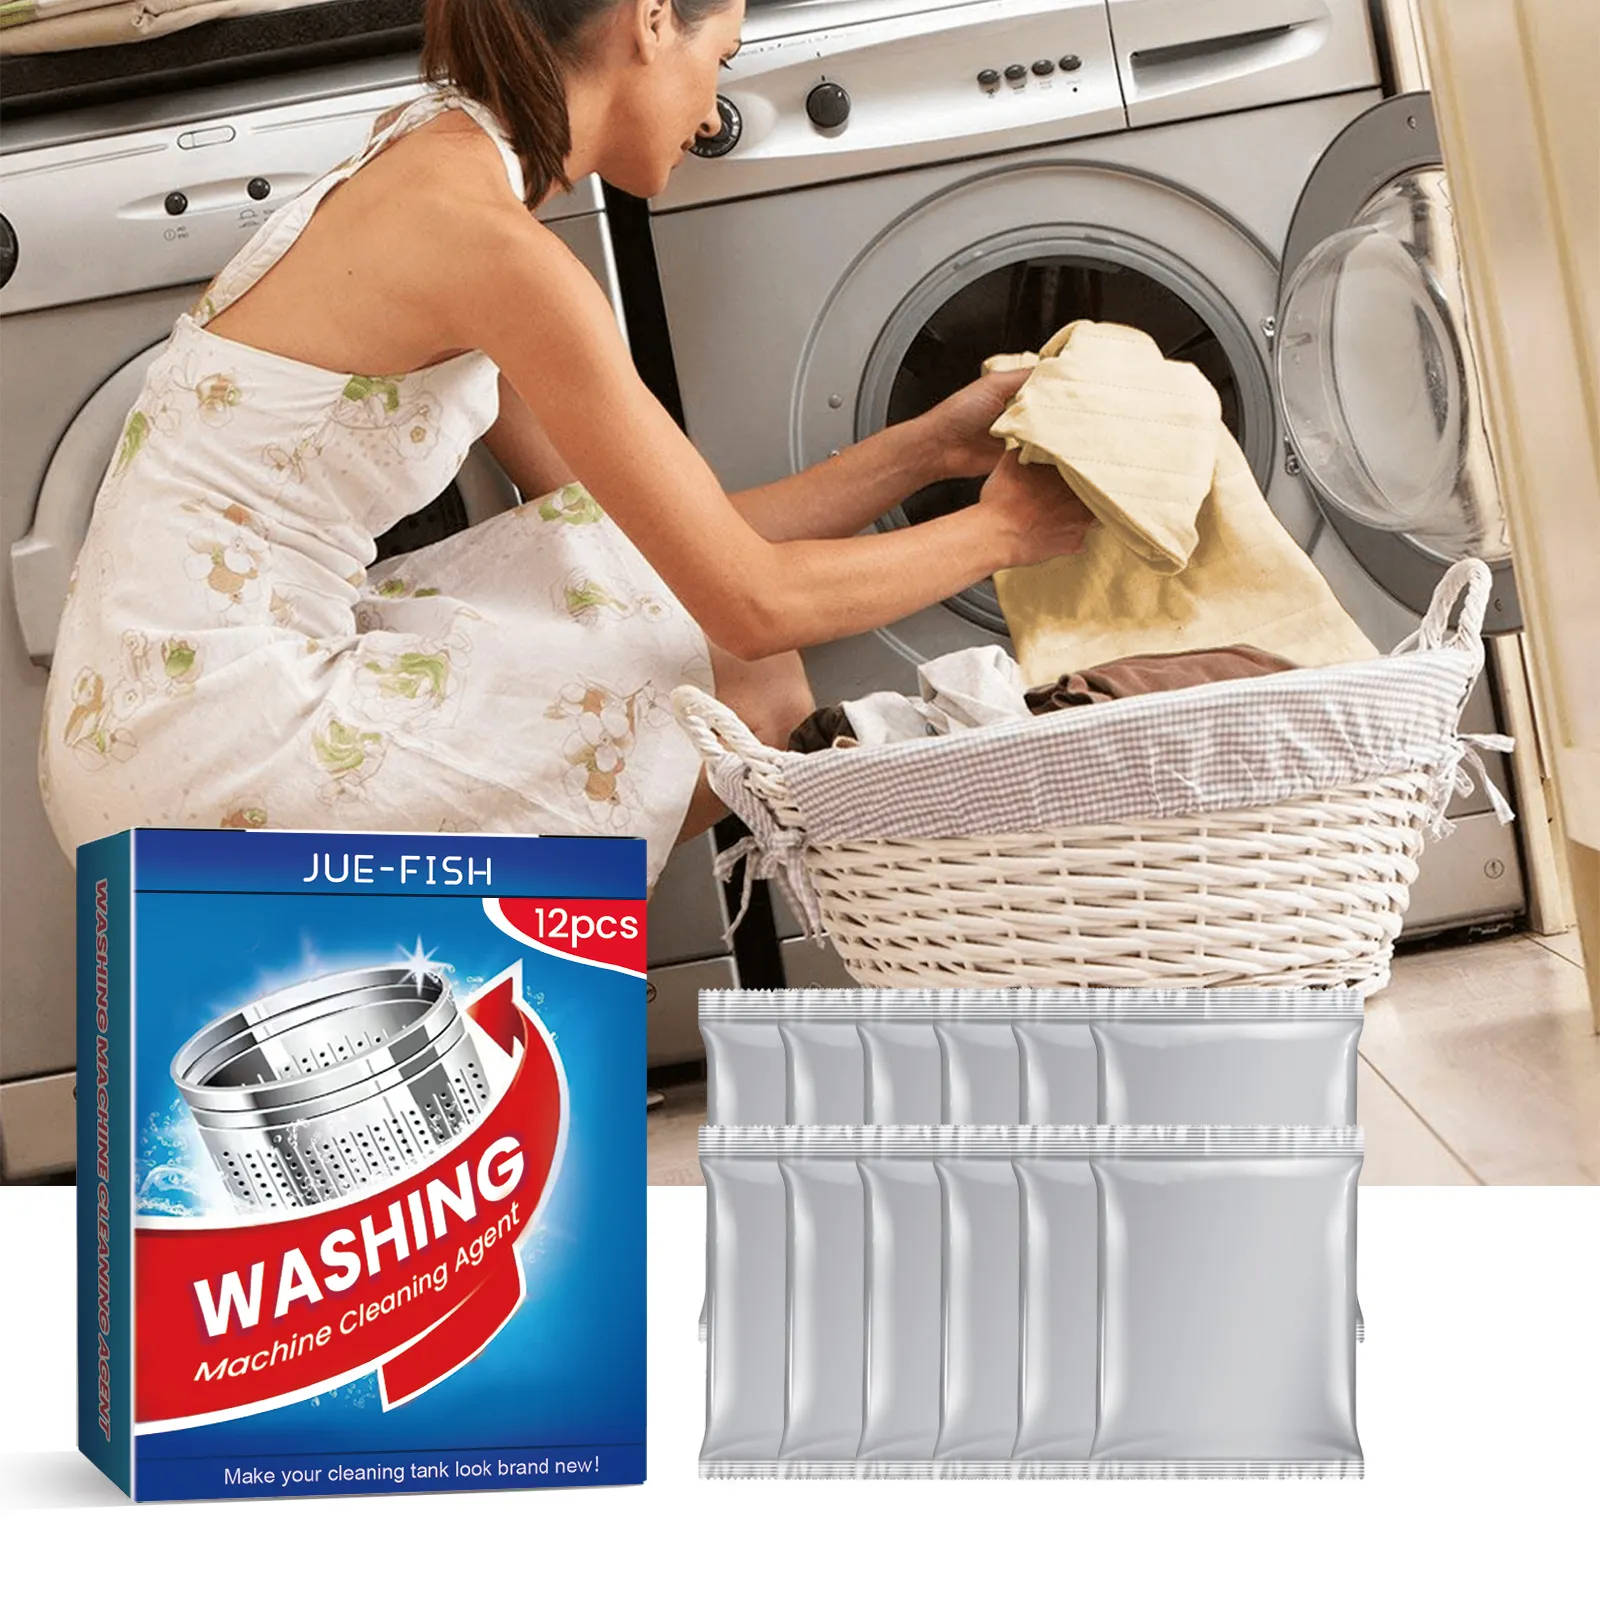 Agen pembersih tangki mesin cuci, bubuk pembersih rumah tangga, deterjen, penghilang jamur, untuk pembersih cucian